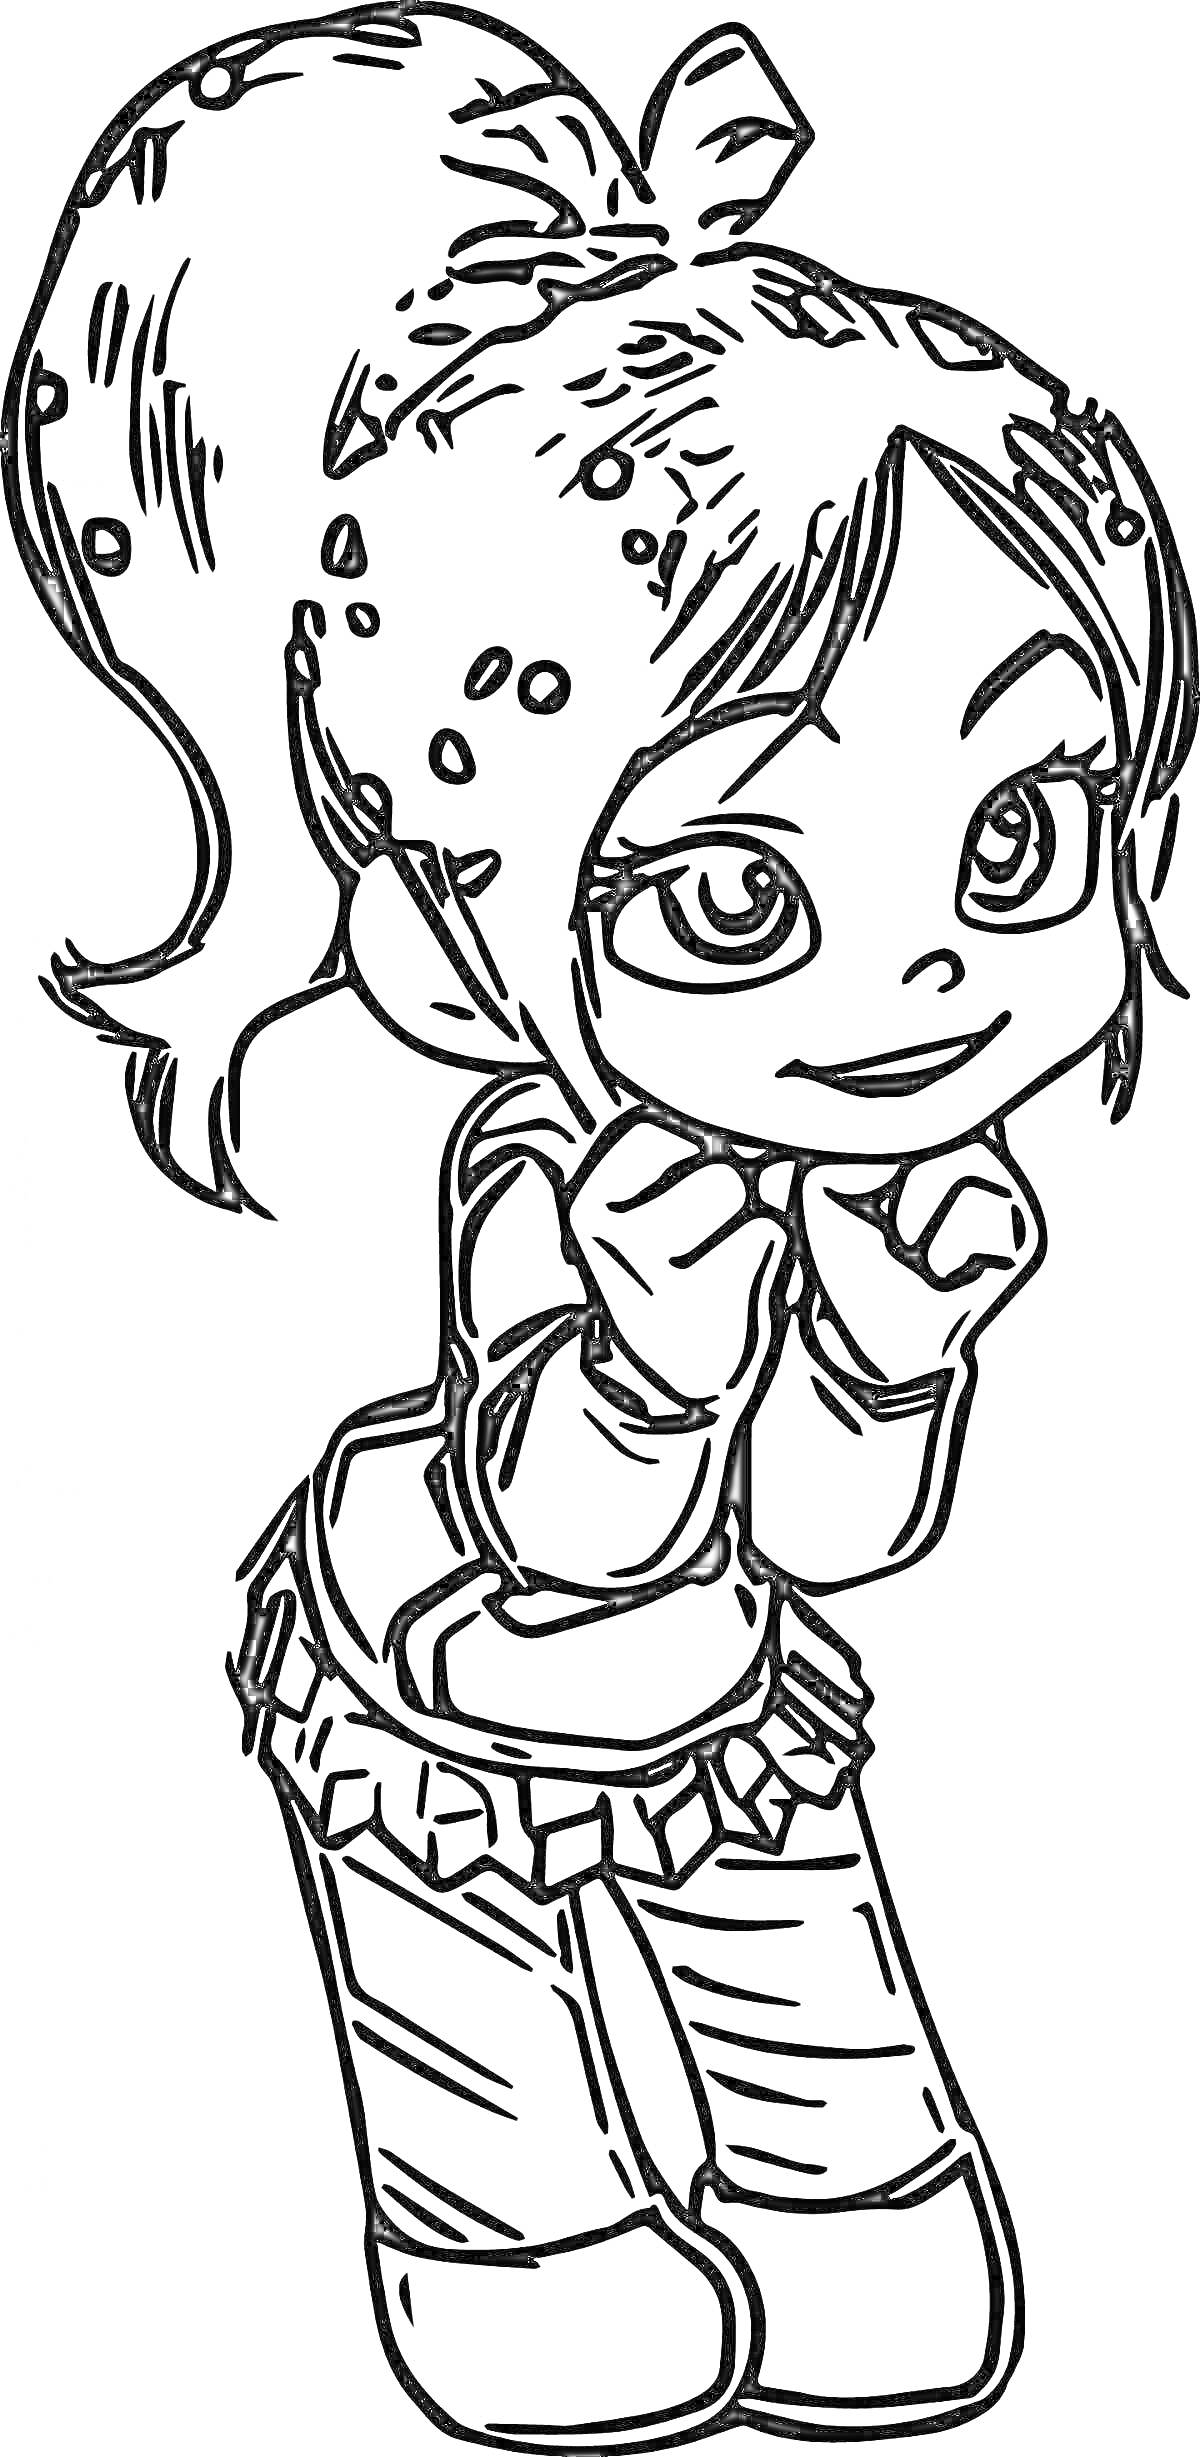 Раскраска Девочка с хвостиком и конфетками в волосах, одета в кофту с длинными рукавами и сапоги, прячет руки под подбородком